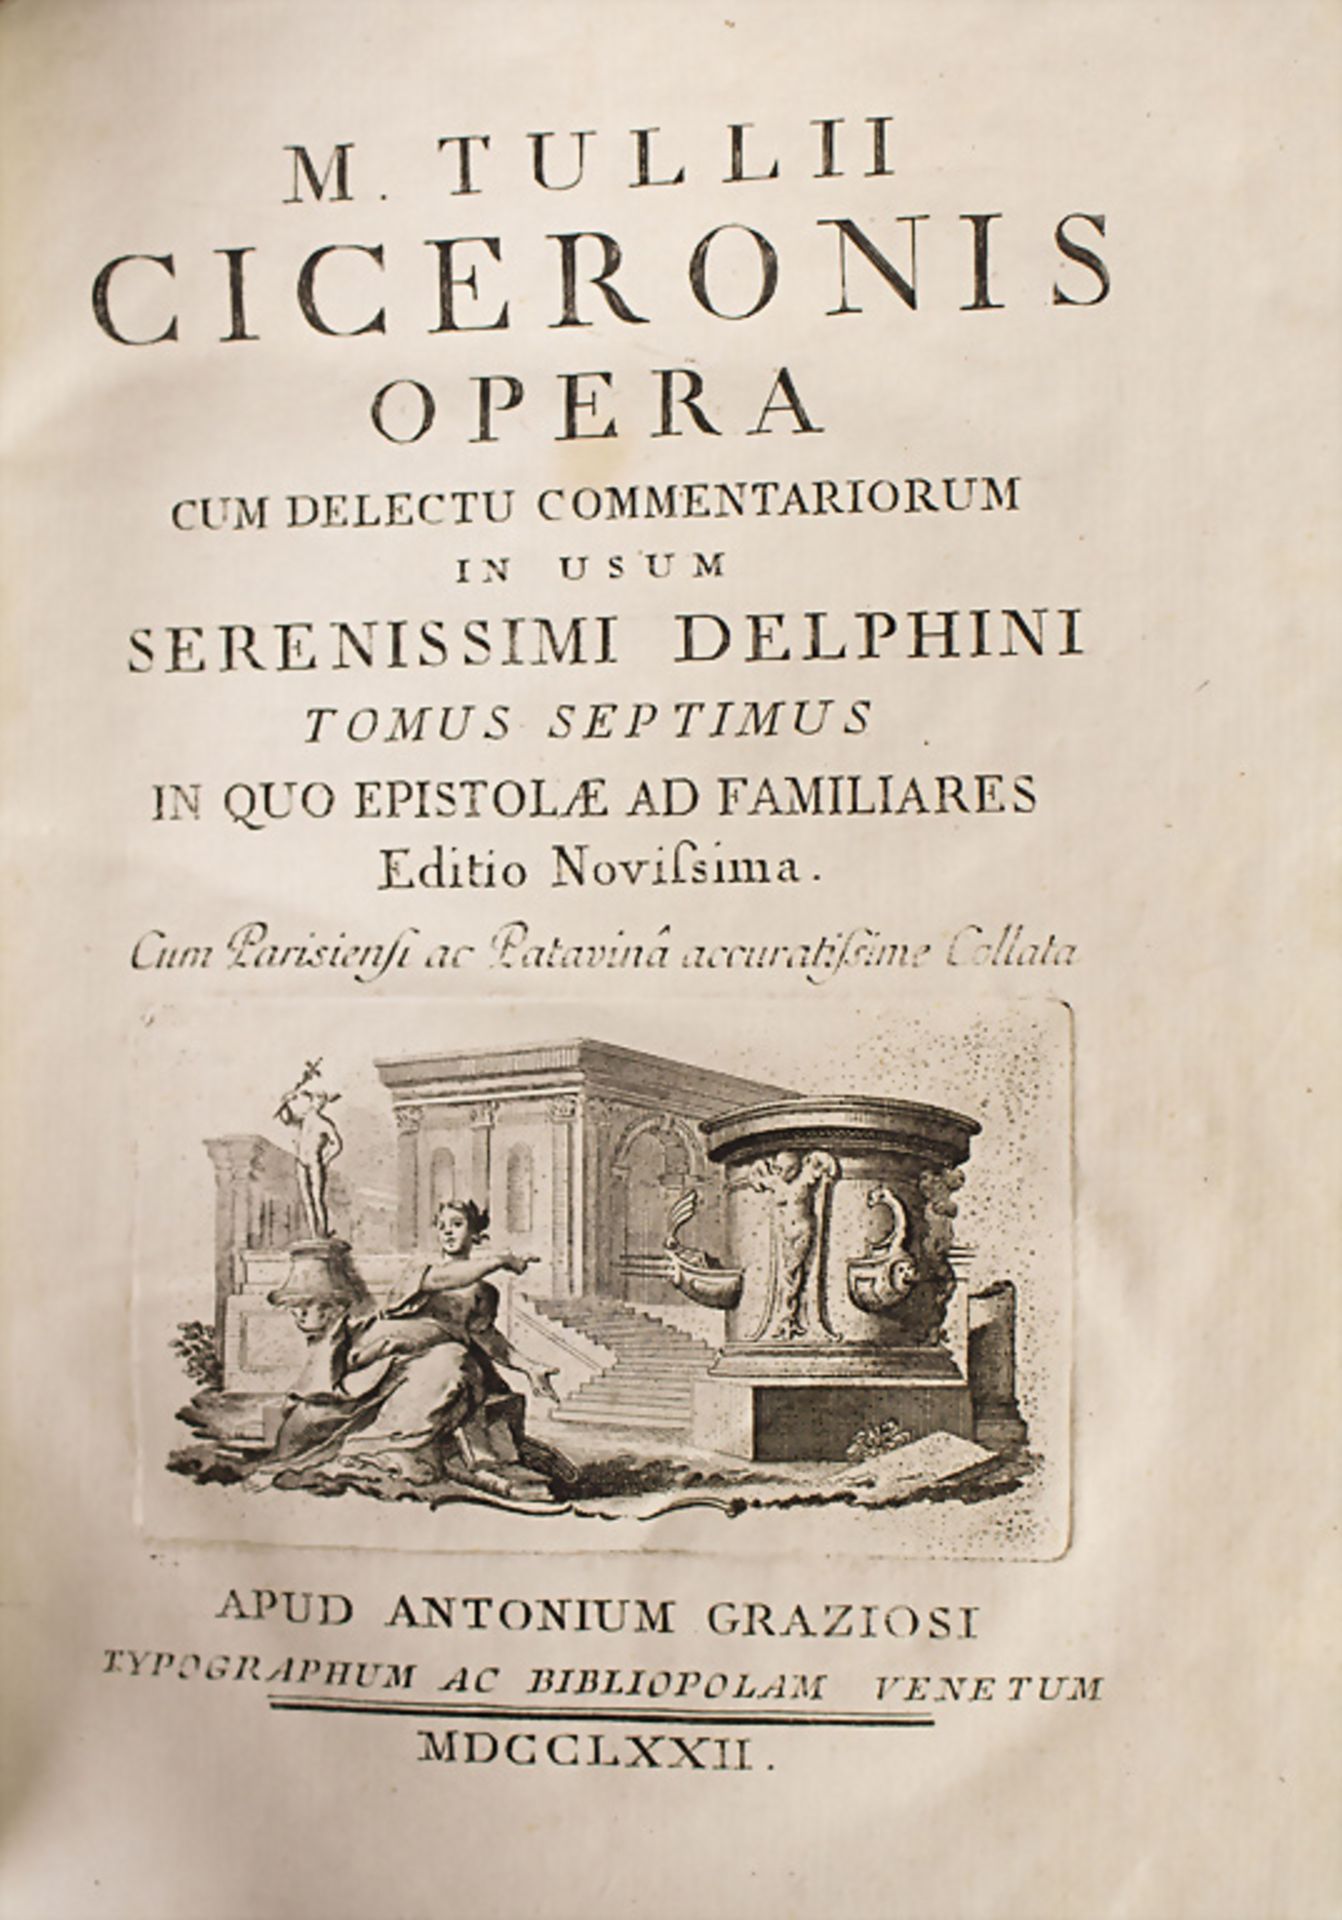 M. Tullii Ciceronis: 'Opera, cum delectu commemtariorum in usum serenissimi delphini', 1772 - Image 4 of 6